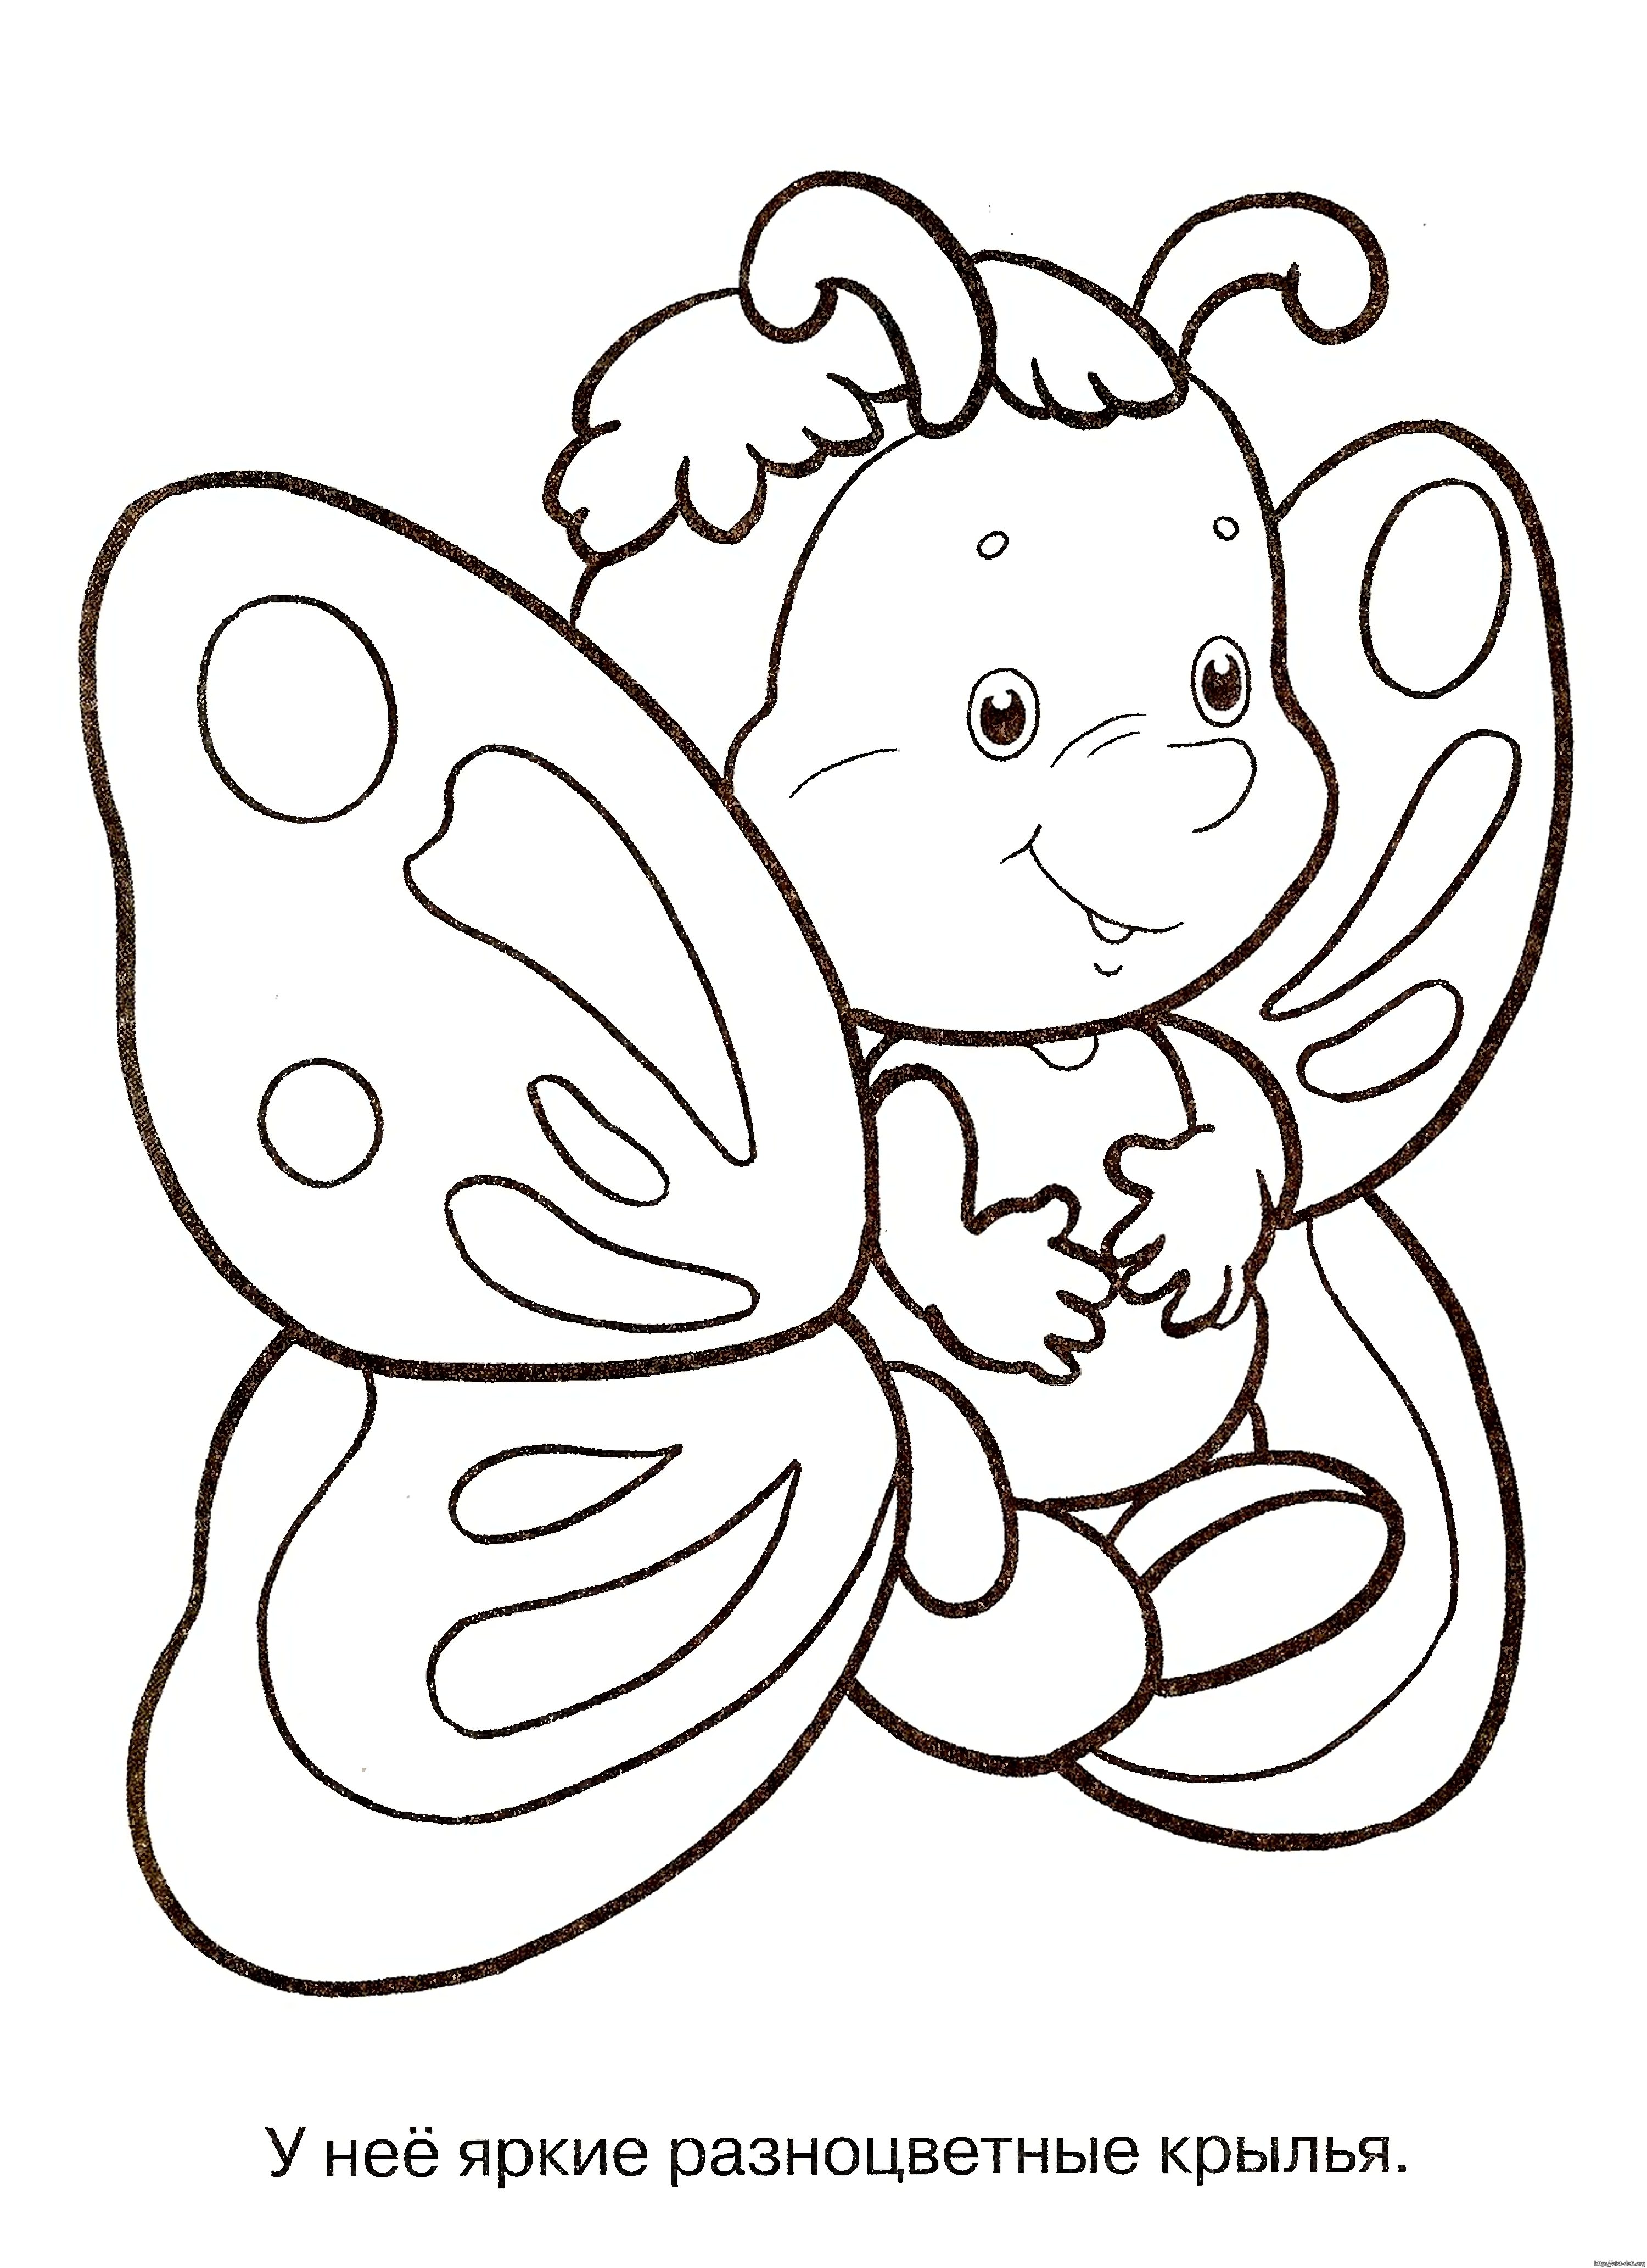 Картинки для детей распечатать. Раскраска "бабочки". Для раскрашивания детям. Бабочка раскраска для малышей. Трафареты для рисования для детей.